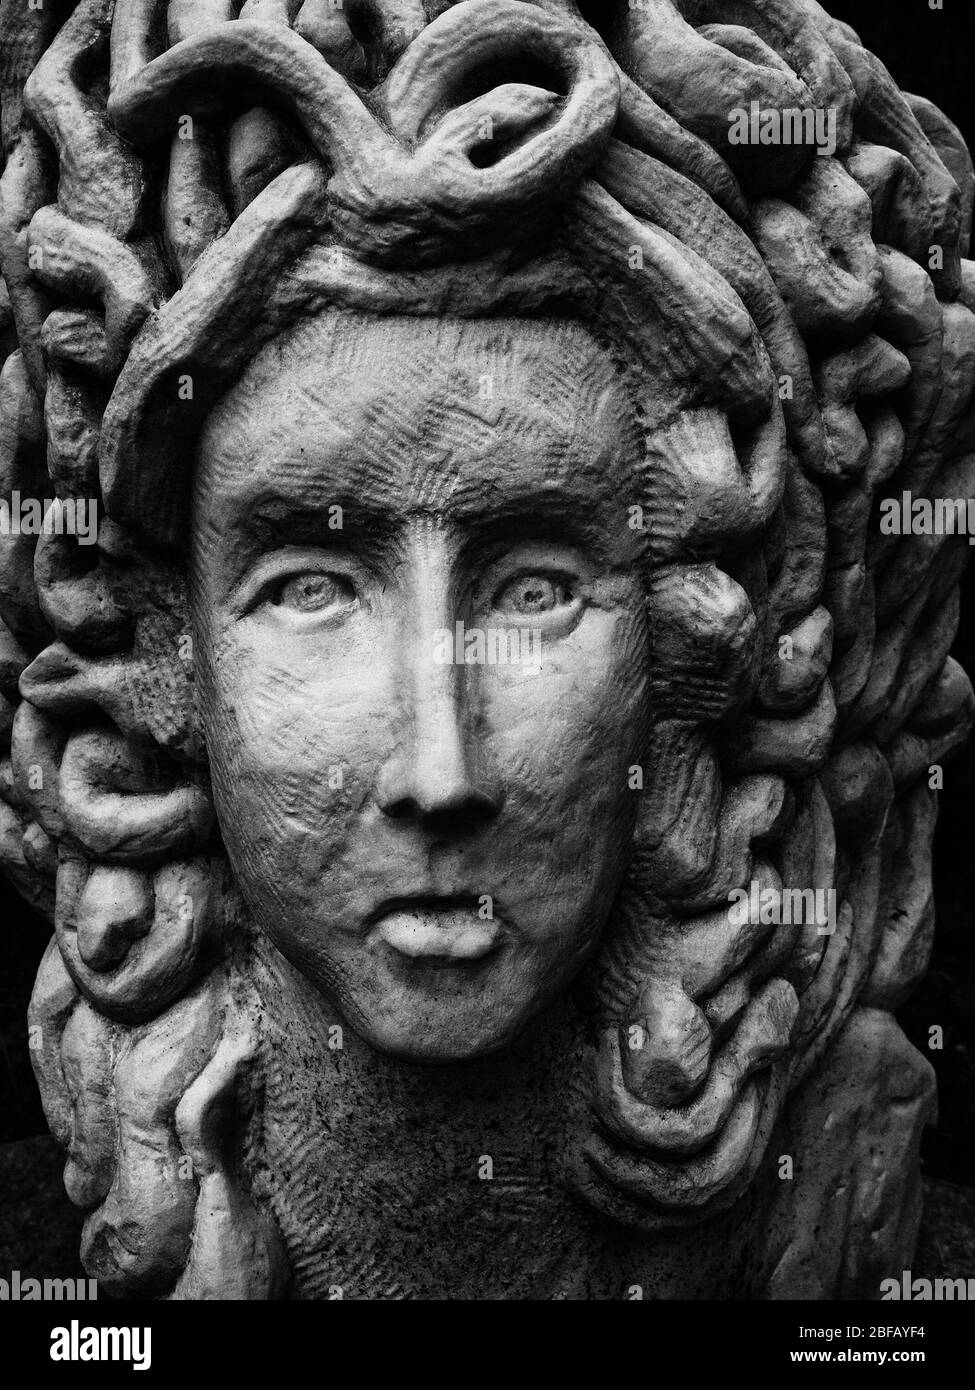 Vérone, Italie - 17 septembre 2017 : détail de la statue de Medusa, femme aux serpents au lieu de cheveux. Banque D'Images